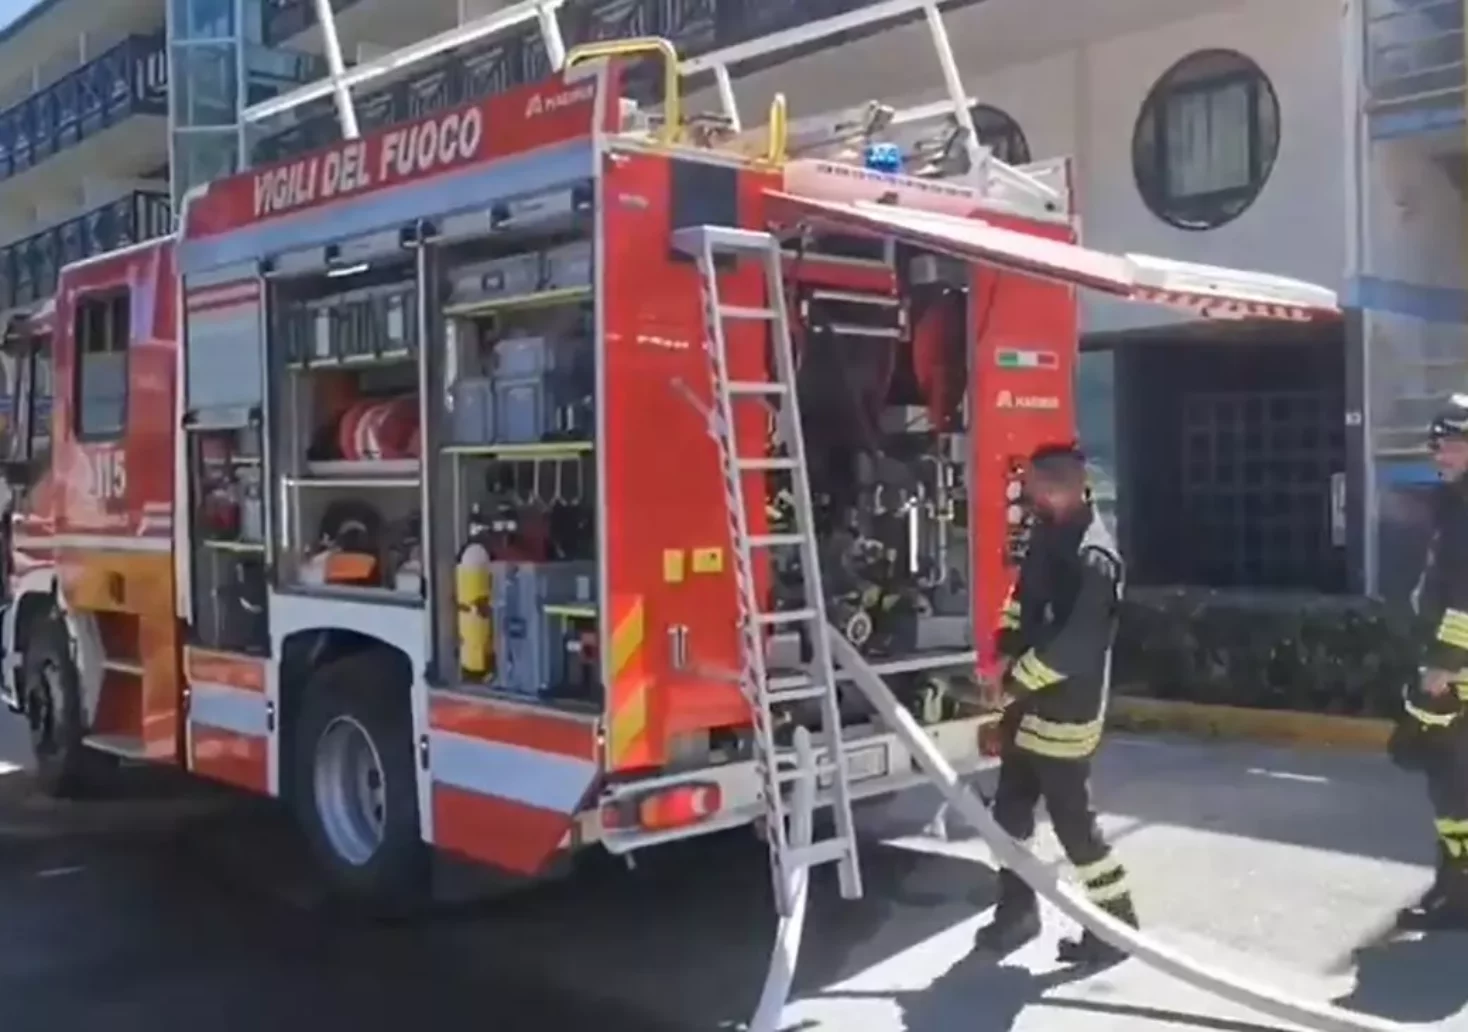 Foto in Beitrag von 5min.at: Zu sehen sind mehrere Feuerwehrmänner der Feuerwehr in Lignano bei dem Großbrand.